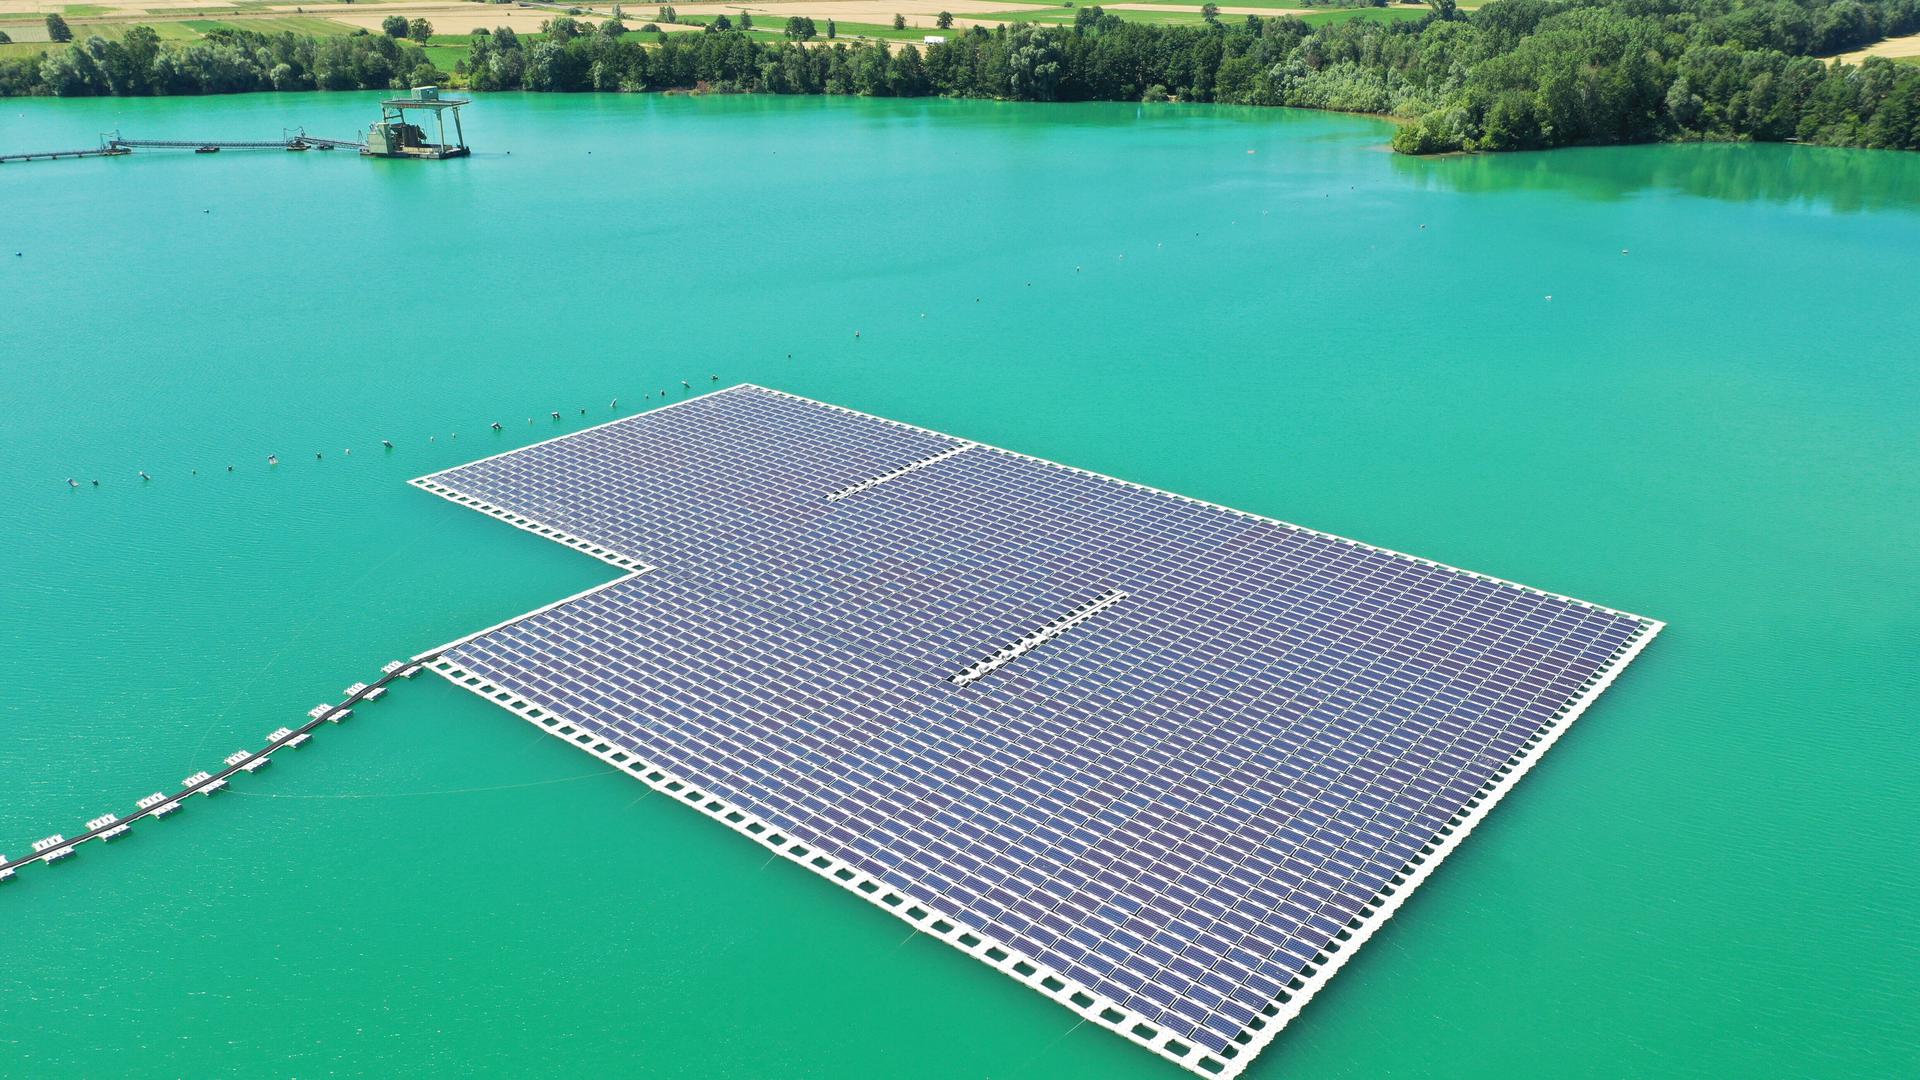 Eine Photovoltaik-Anlage schwimmt auf dem Baggersee Maiwald.